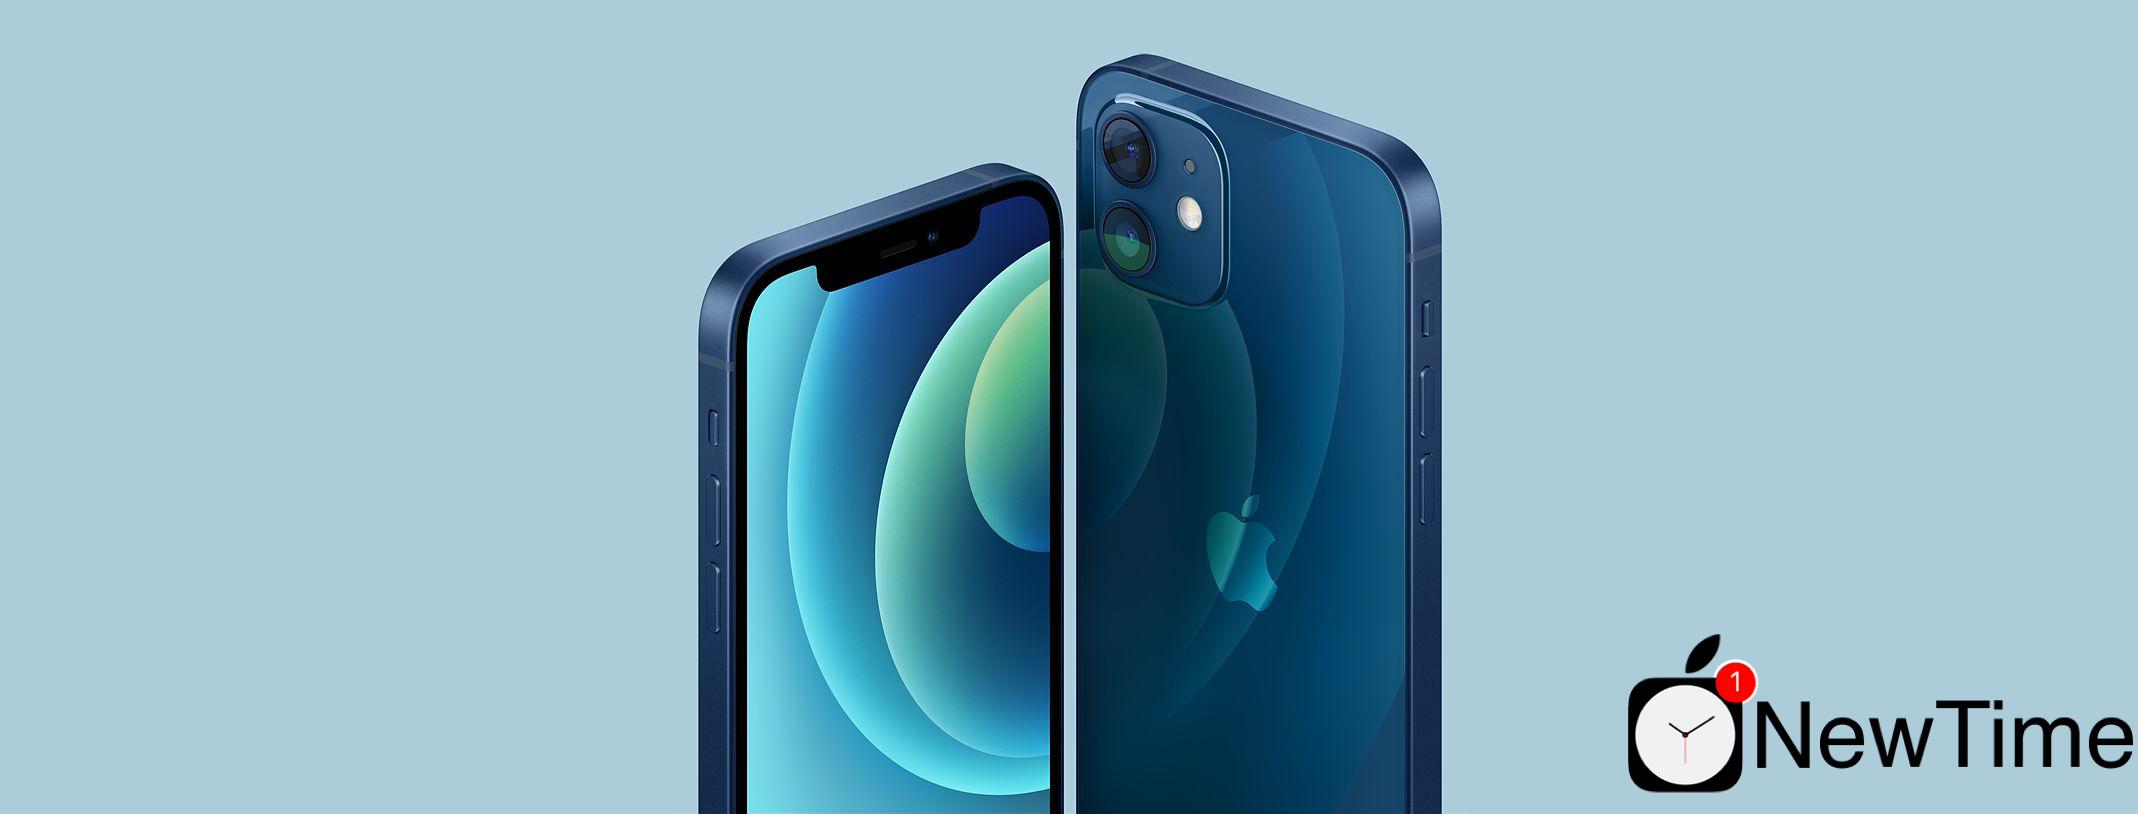 Купить Apple iPhone 12 Mini 128GB Blue (MG8P3, MGE63) выгодно в Киеве |  цена и обзор в интернет магазине NewTime